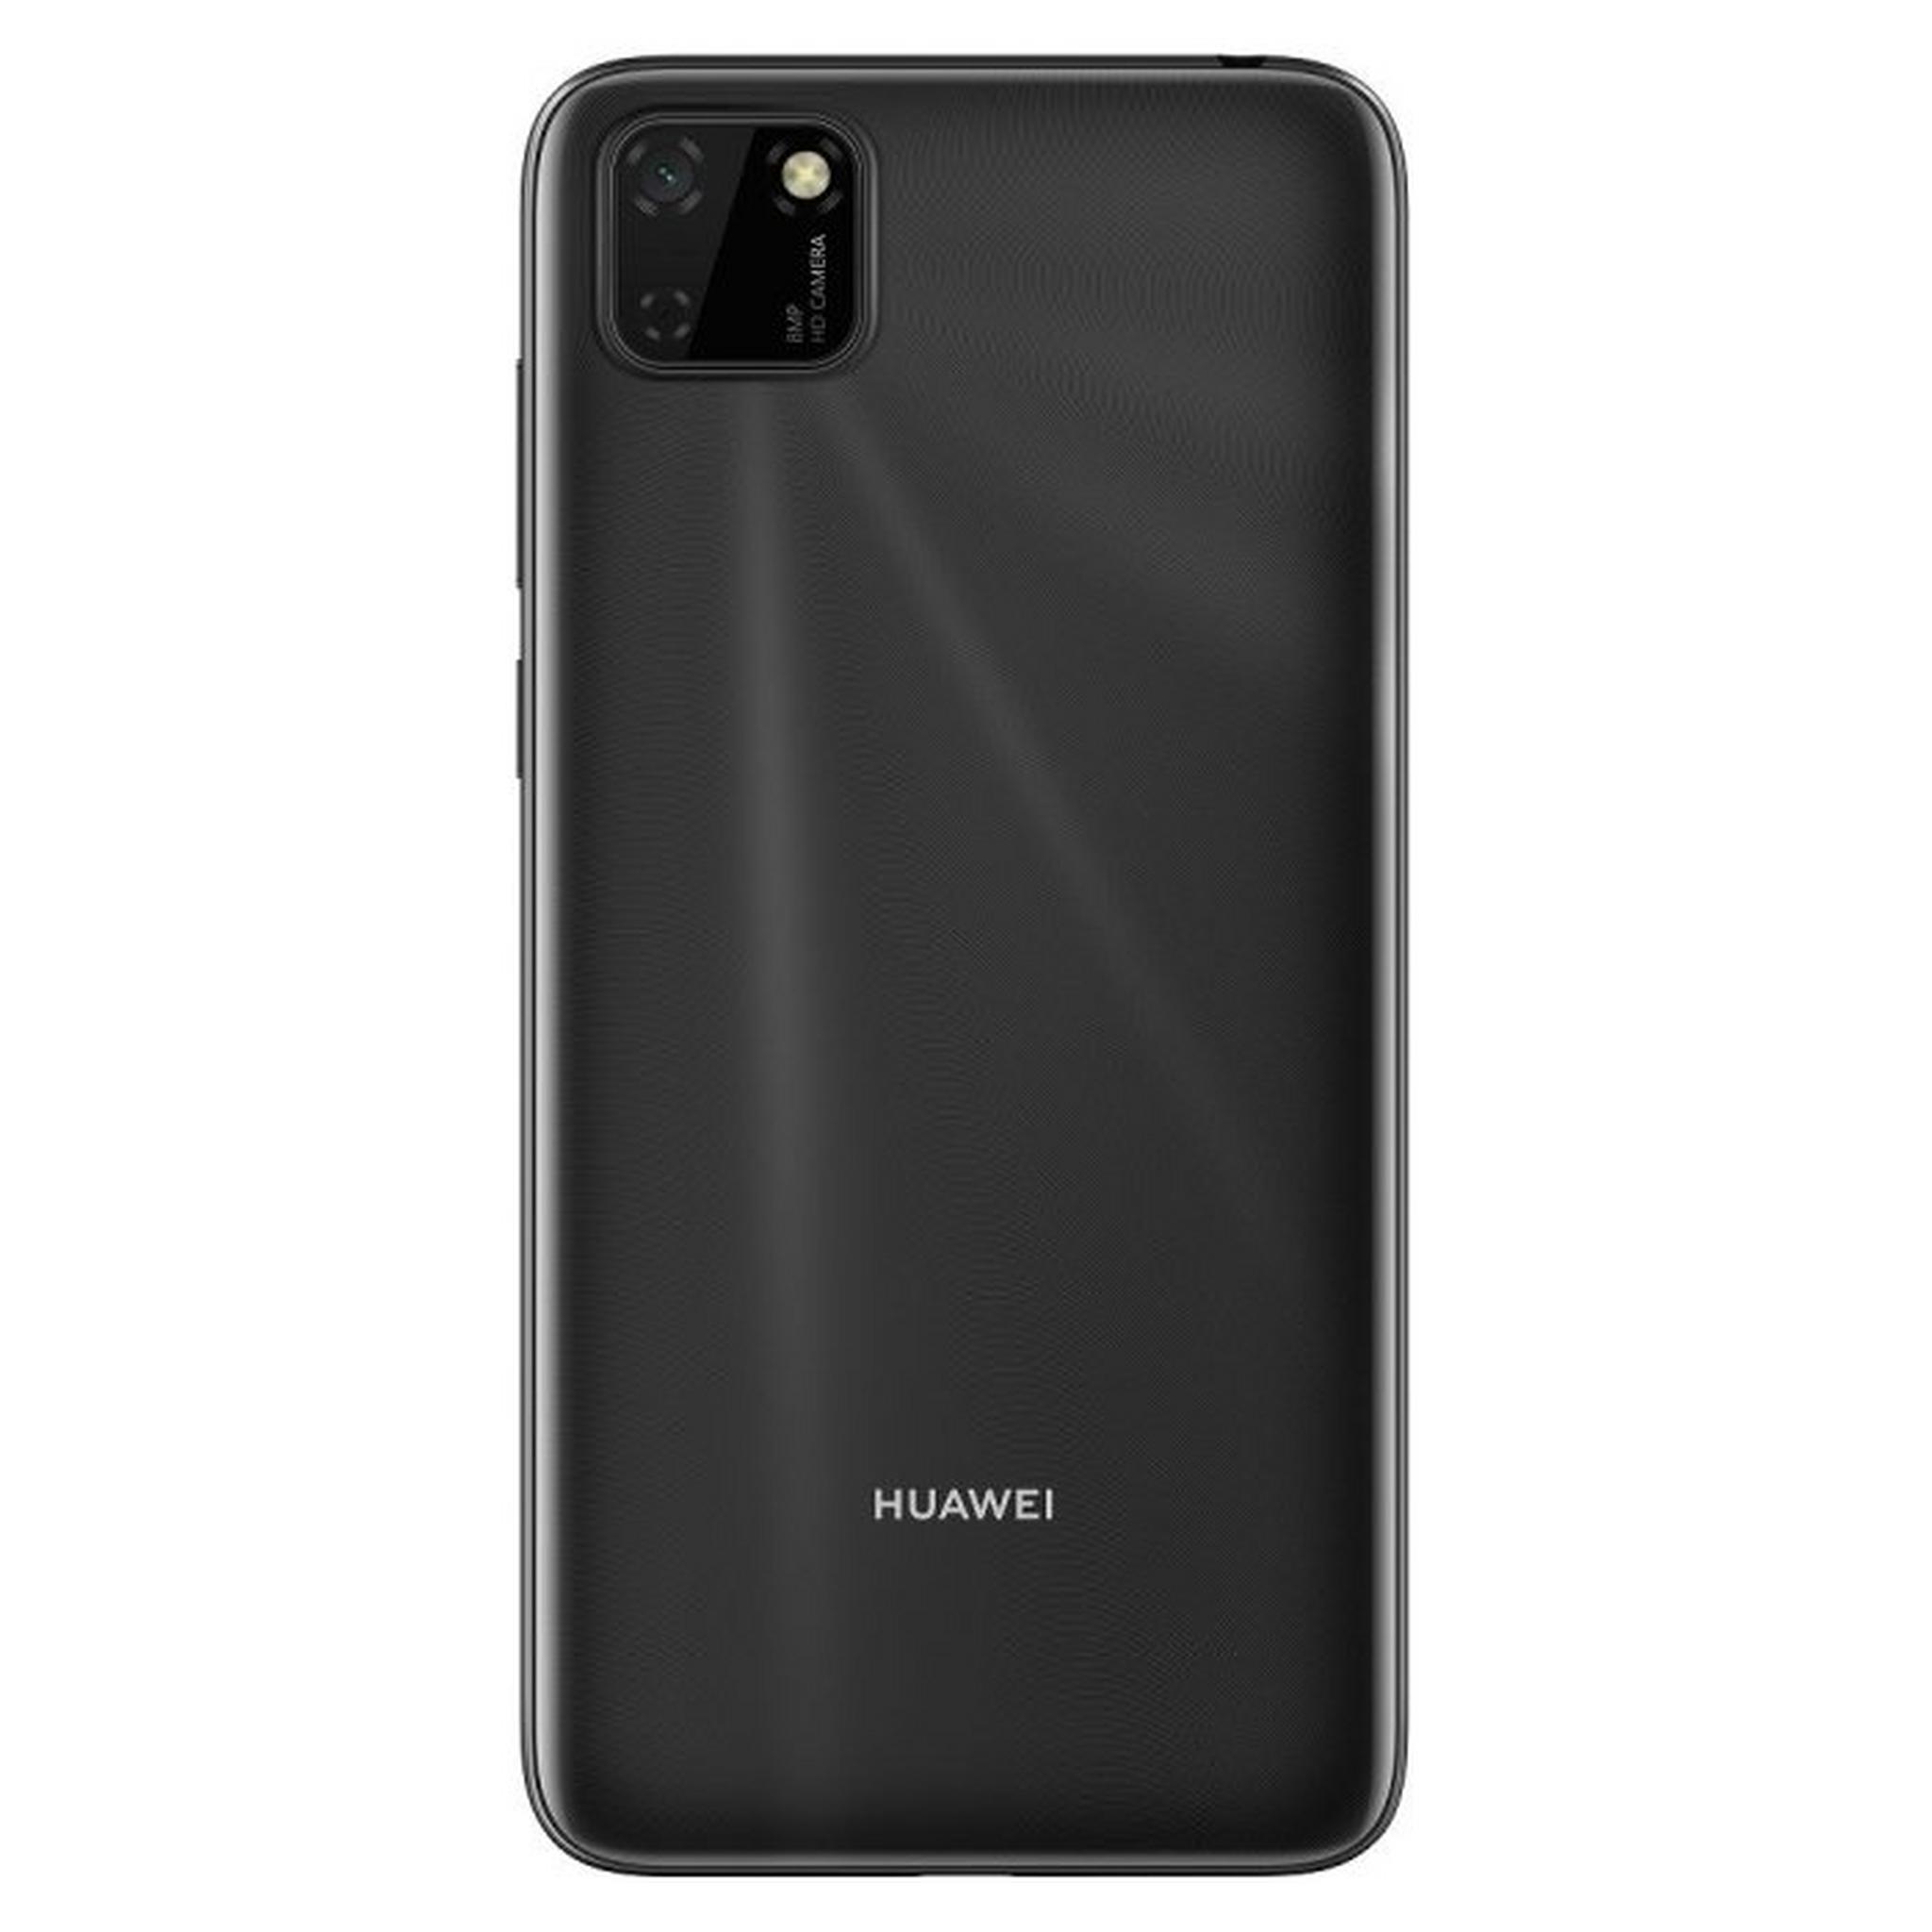 Huawei Y5p 32GB Phone - Black